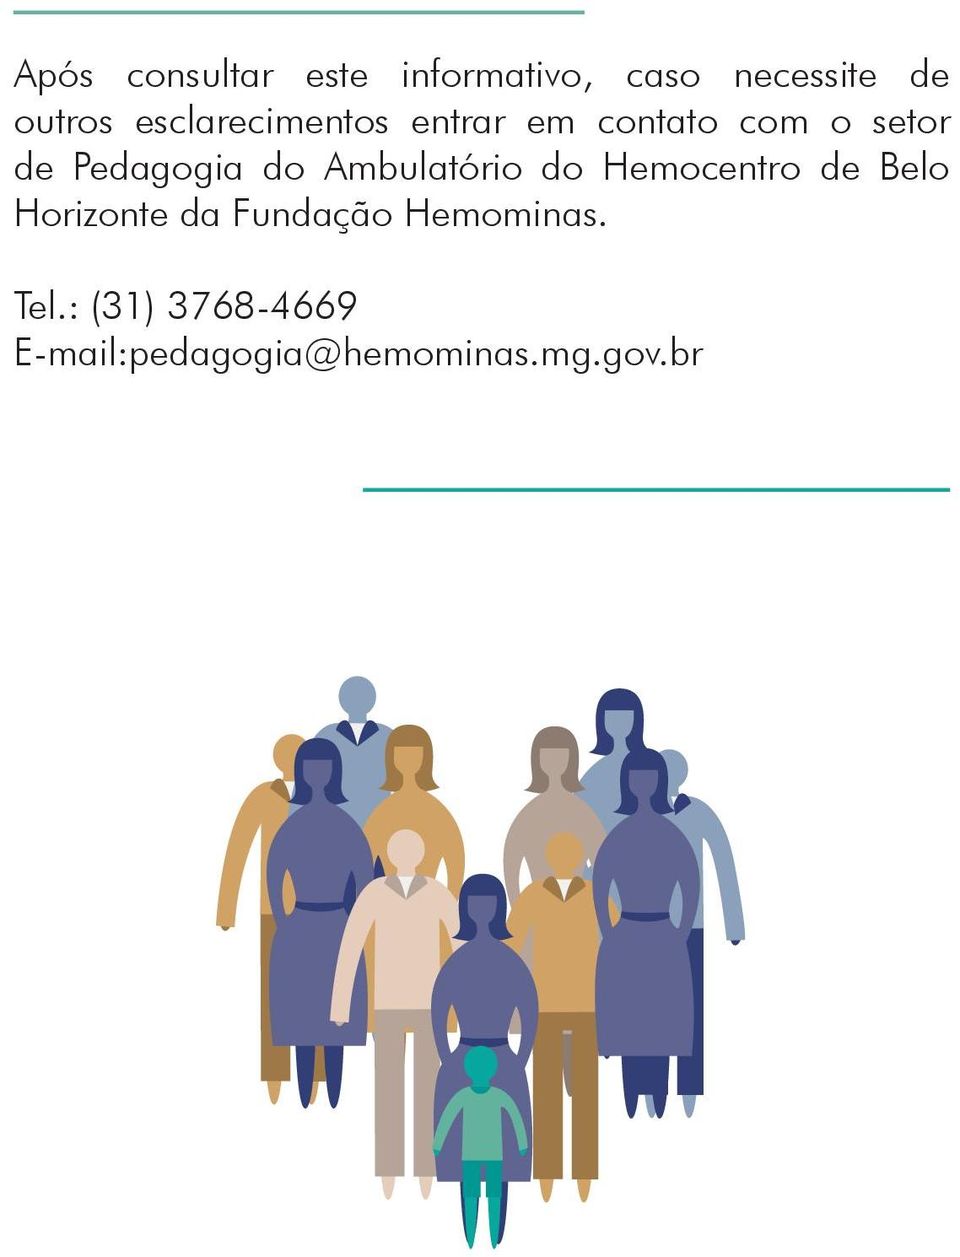 Ambulatório do Hemocentro de Belo Horizonte da Fundação